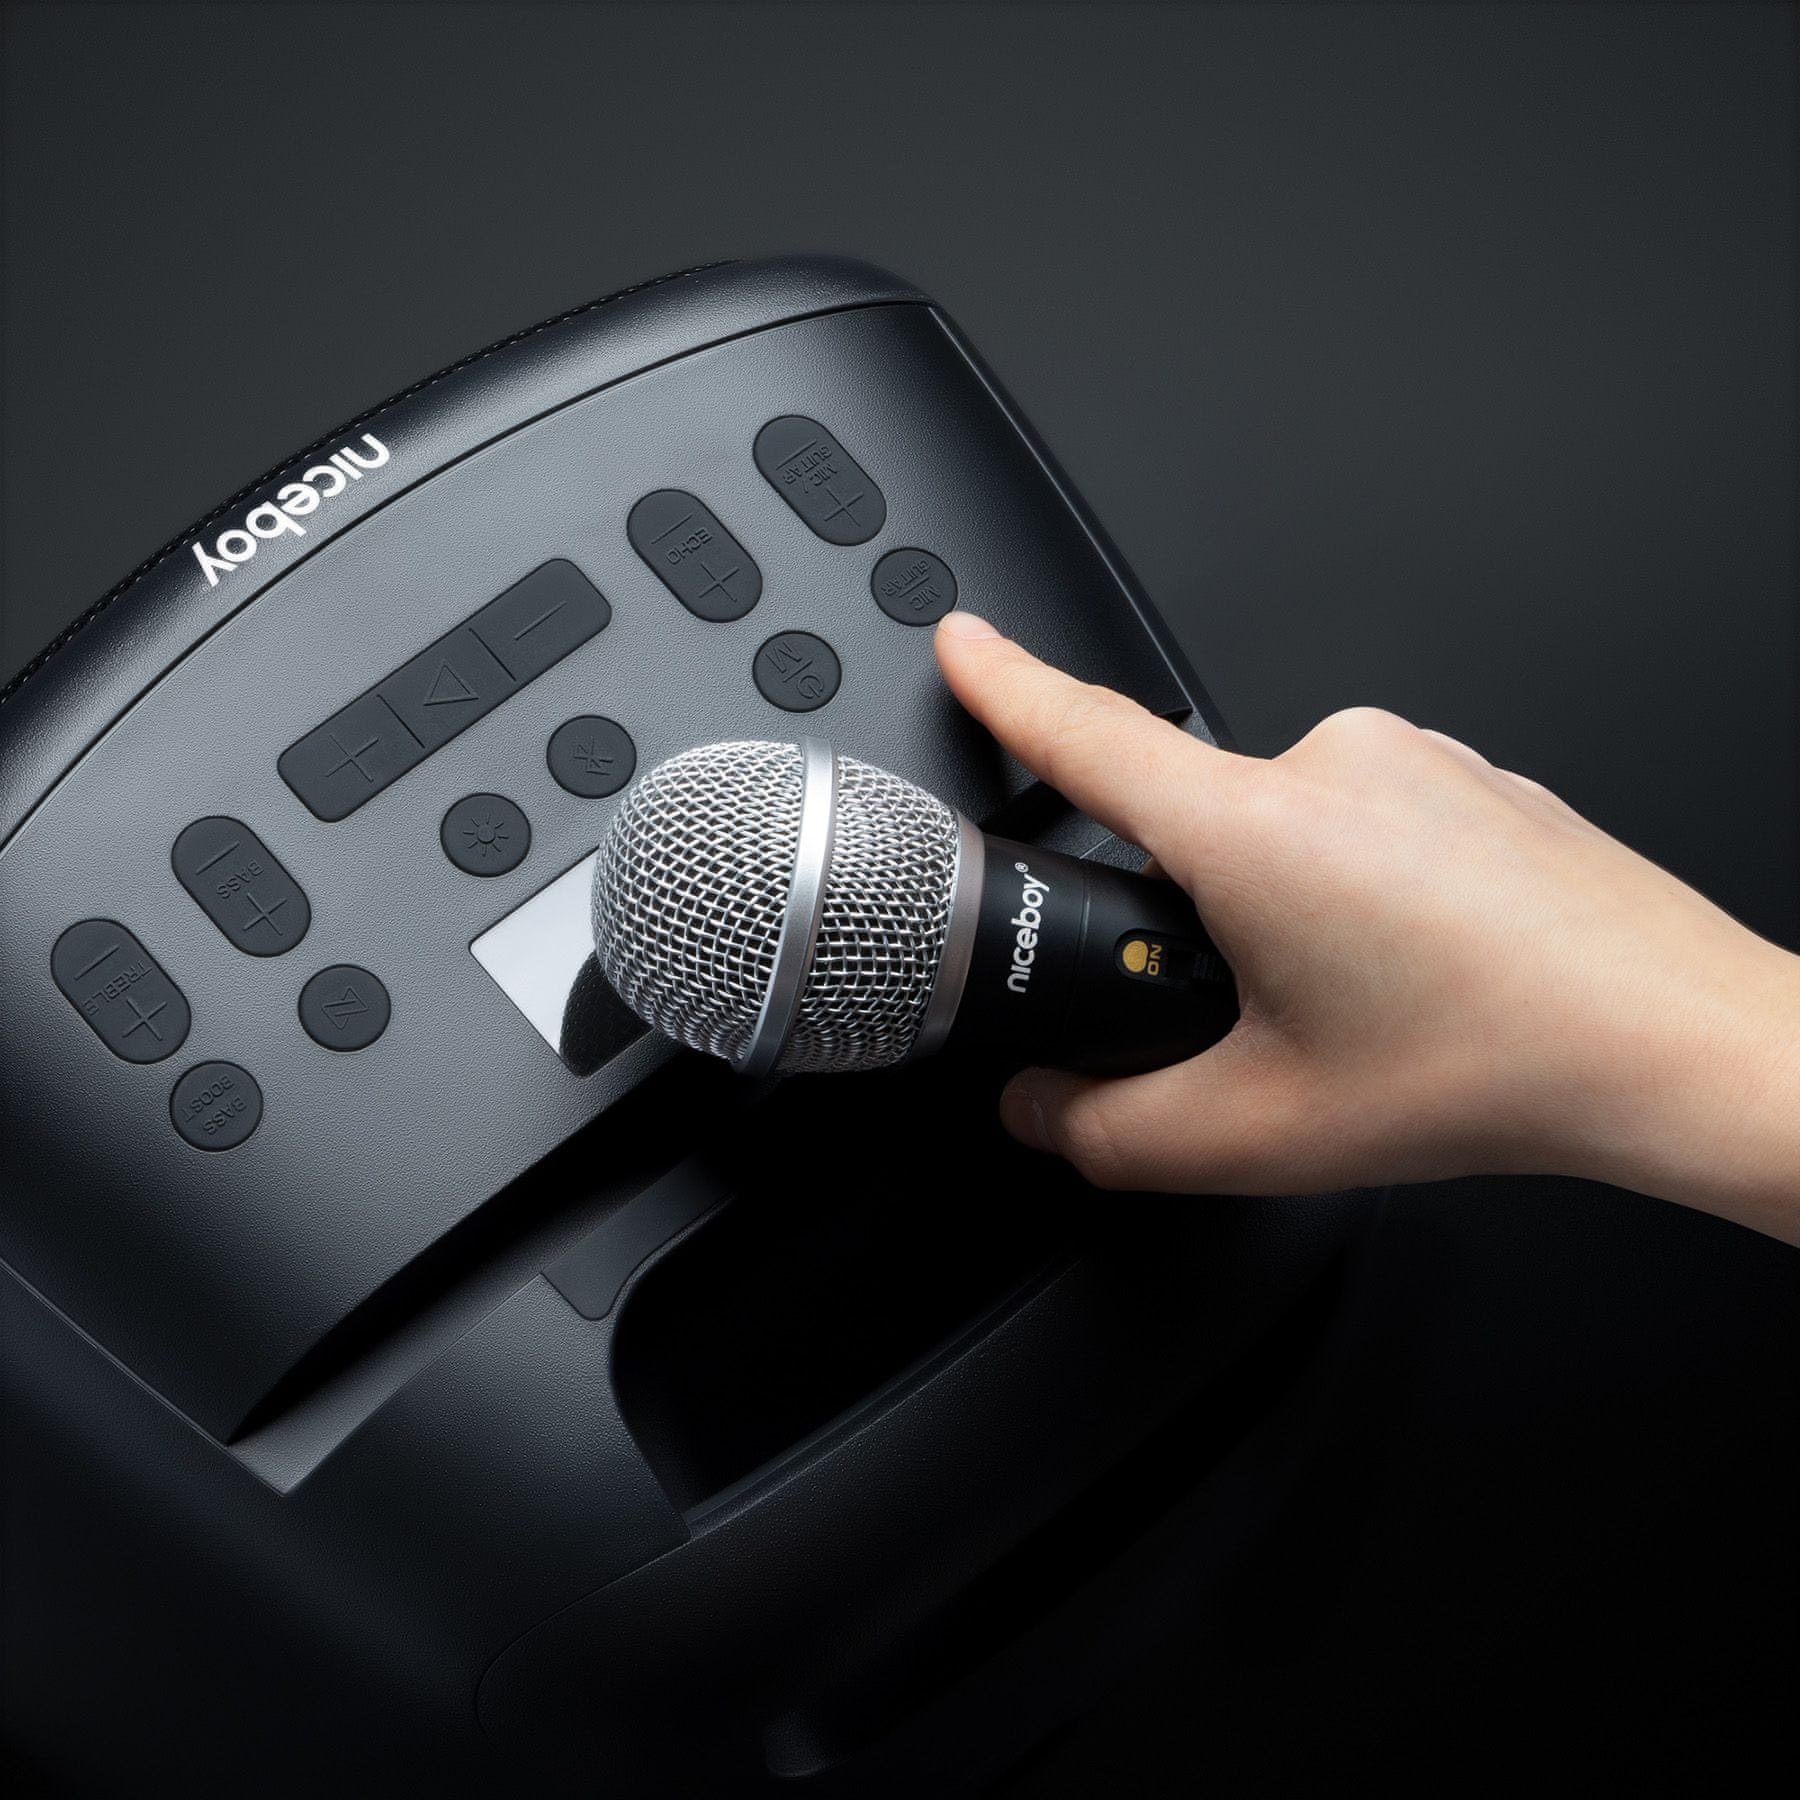 Bluetooth párty reproduktor Niceboy party boy 2 100w maxxbass technológie ipx4 odolnosť vode svetelné efekty karaoke možnosť pripojenia hudobného nástroja výdrž 20 h na nabitie usb prehrávanie microSD karty aux in bass boost tlačidlo multisession mikrofón v balení